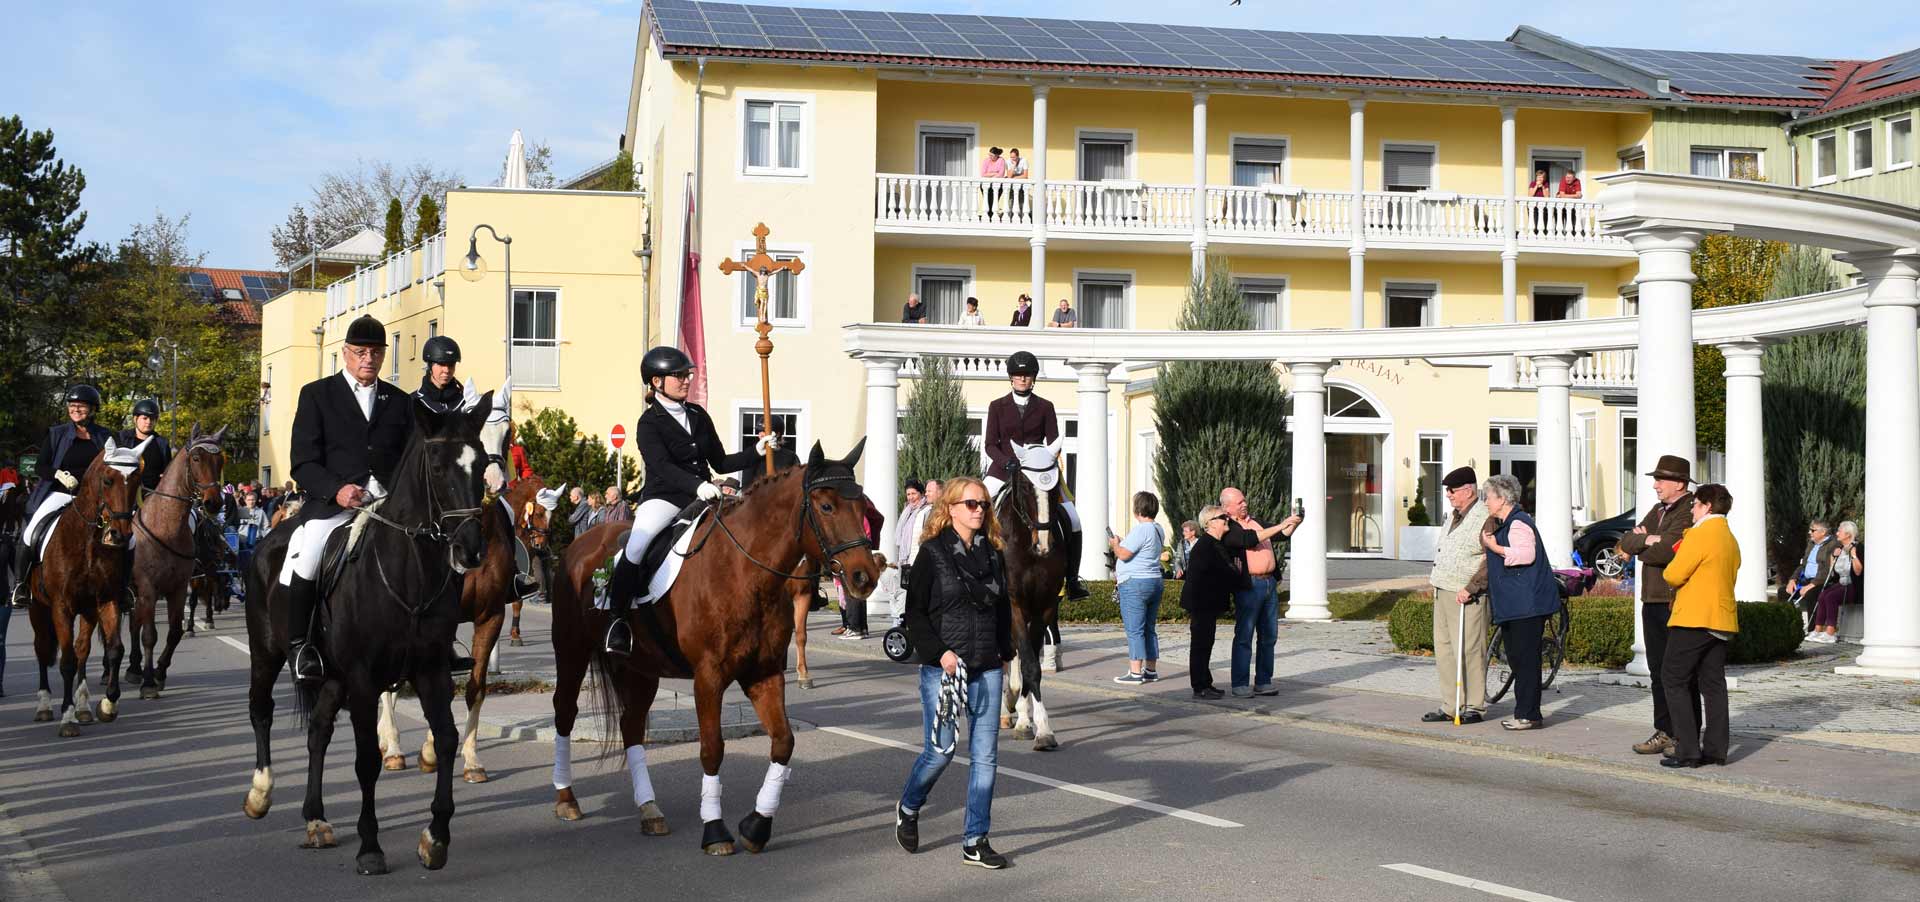 Beim Umzug durch Bad Gögging präsentierten sich die geschmückten Pferde und prachtvollen Kutschen. (Foto: © Tourist-Information Bad Gögging | Zitzelsberger)